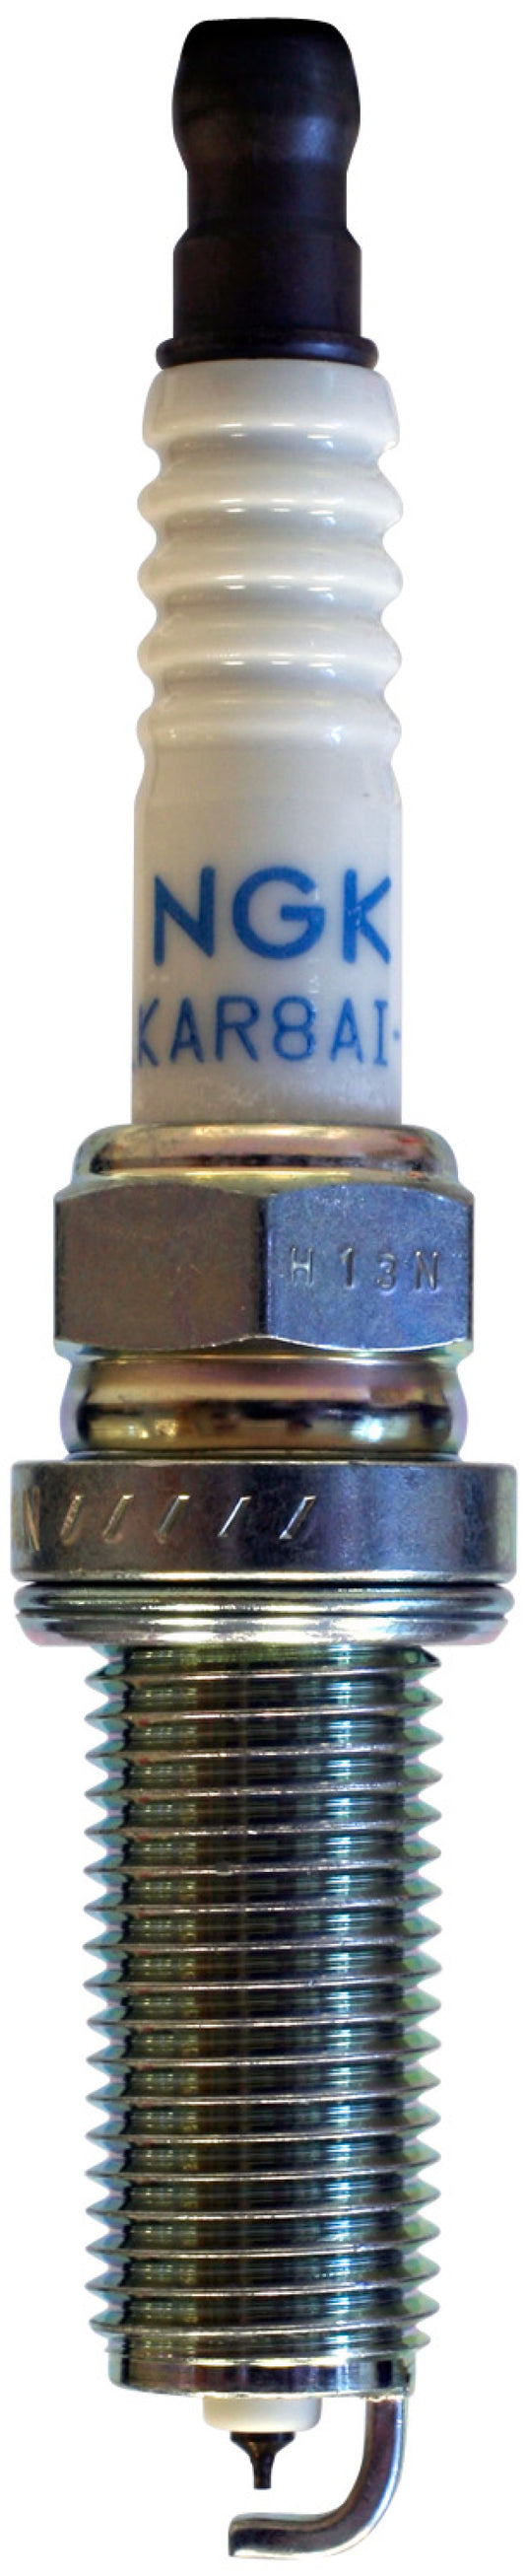 NGK Laser Iridium Spark Plug Box of 4 (LKAR9BI-10)